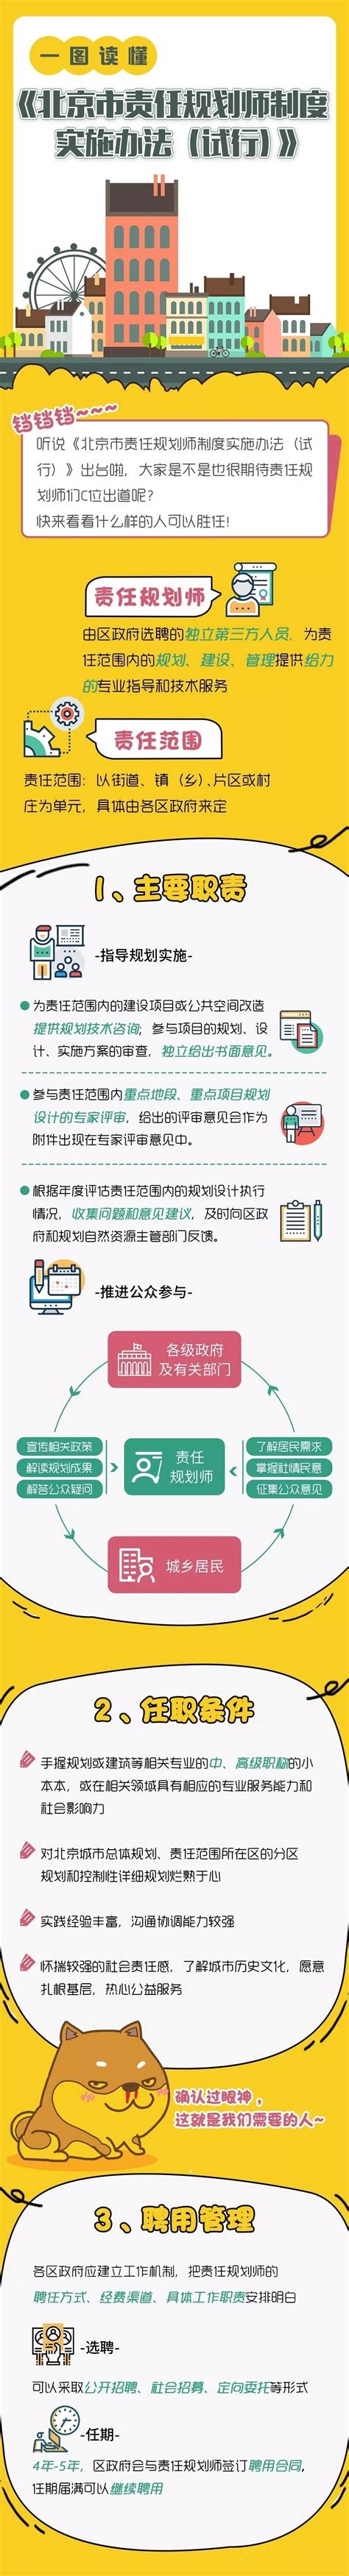 北京市规划和自然资源委员会规划编制技术责任管理办法.docx - 国土人